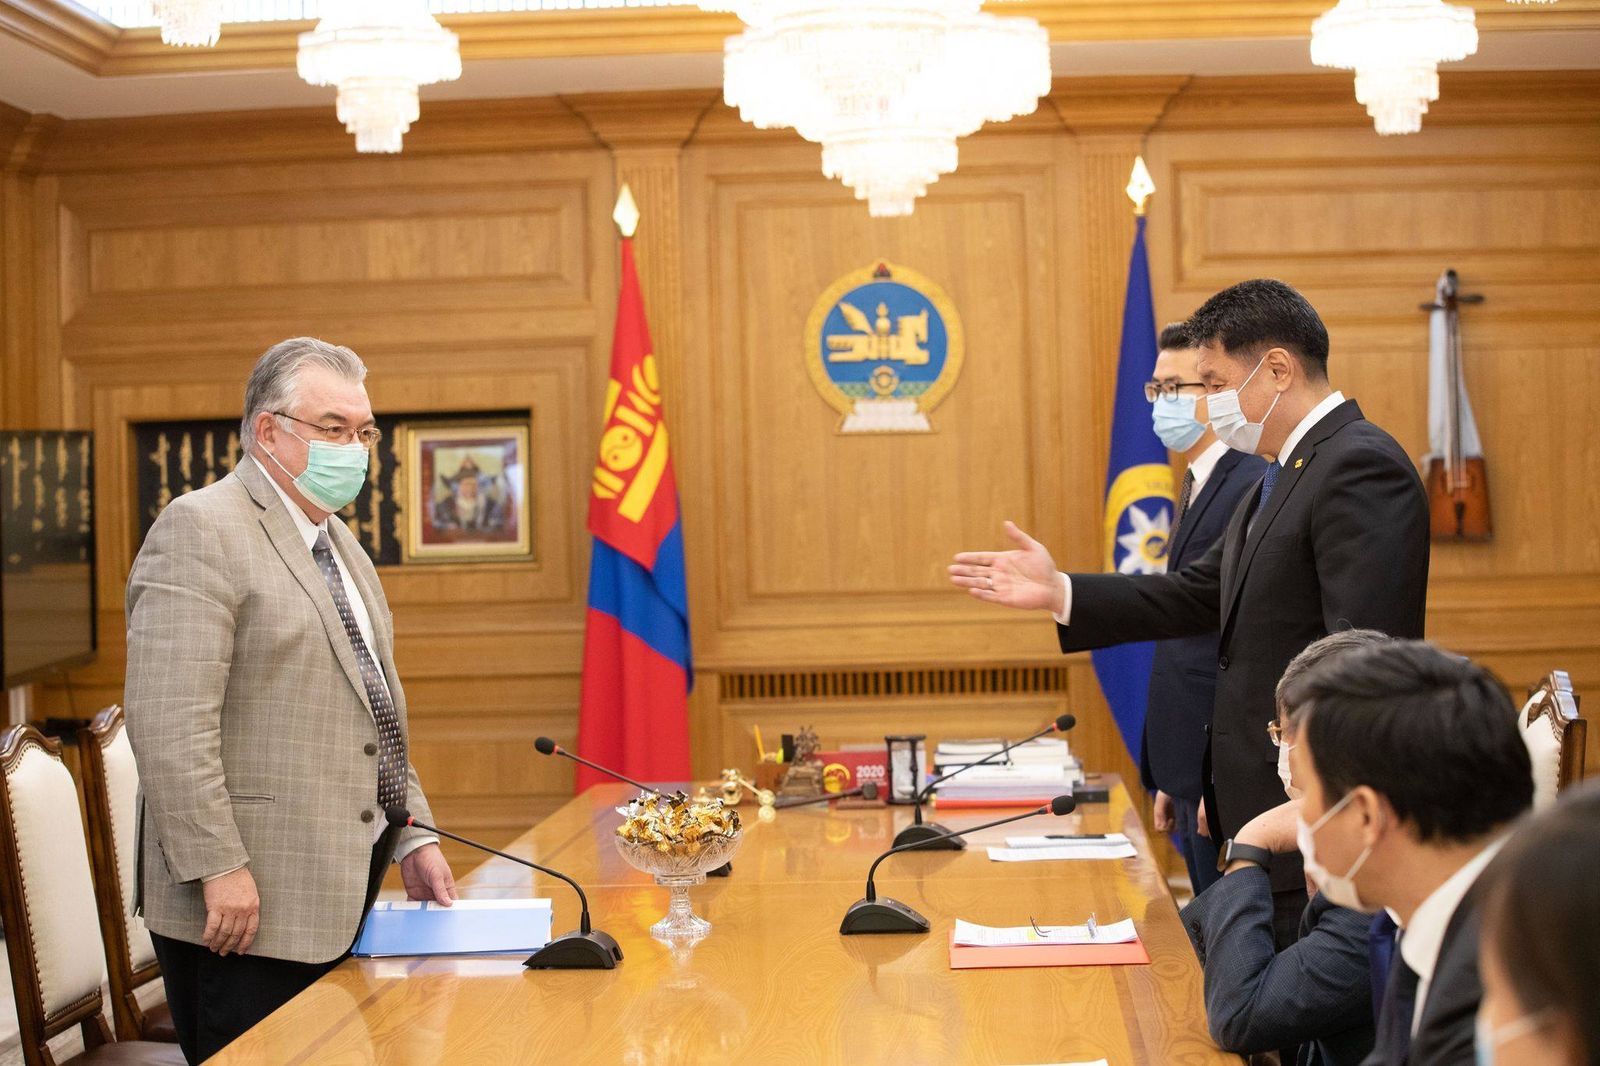 몽골에서 2021년 1분기에 코로나 바이러스 백신 도입을 위한 회담 진행.jpg